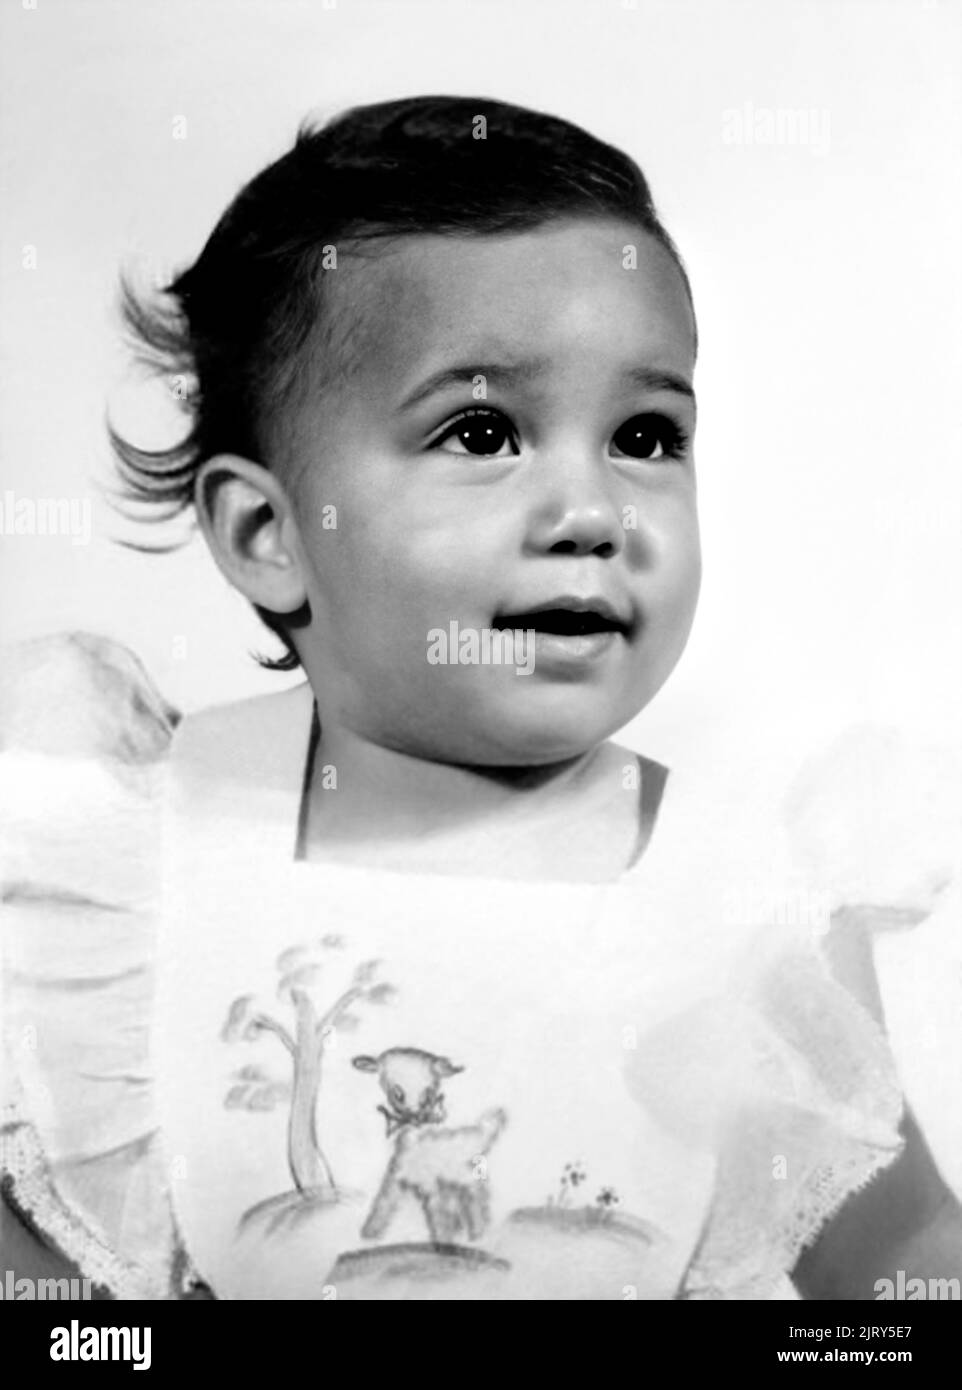 1947 , USA : la célèbre chanteuse pop américaine et actrice CHER ( Cherilyn Sarkisian LaPierre , née le 20 mai 1946 ) quand était un bébé de 1 ans . Photographe inconnu. - HISTOIRE - FOTO STORICHE - Personalità da giovane giovani - ragazza - personnalités quand était jeune fille - INFANZIA - ENFANCE - MUSIQUE POP - MUSICA - cantante - BAMBINI - BAMBINA - ENFANT - ENFANTS - BAMBINO - ENFANCE - INFANZIA - BÉBÉ - sourire - sorriso --- ARCHIVIO GBB Banque D'Images